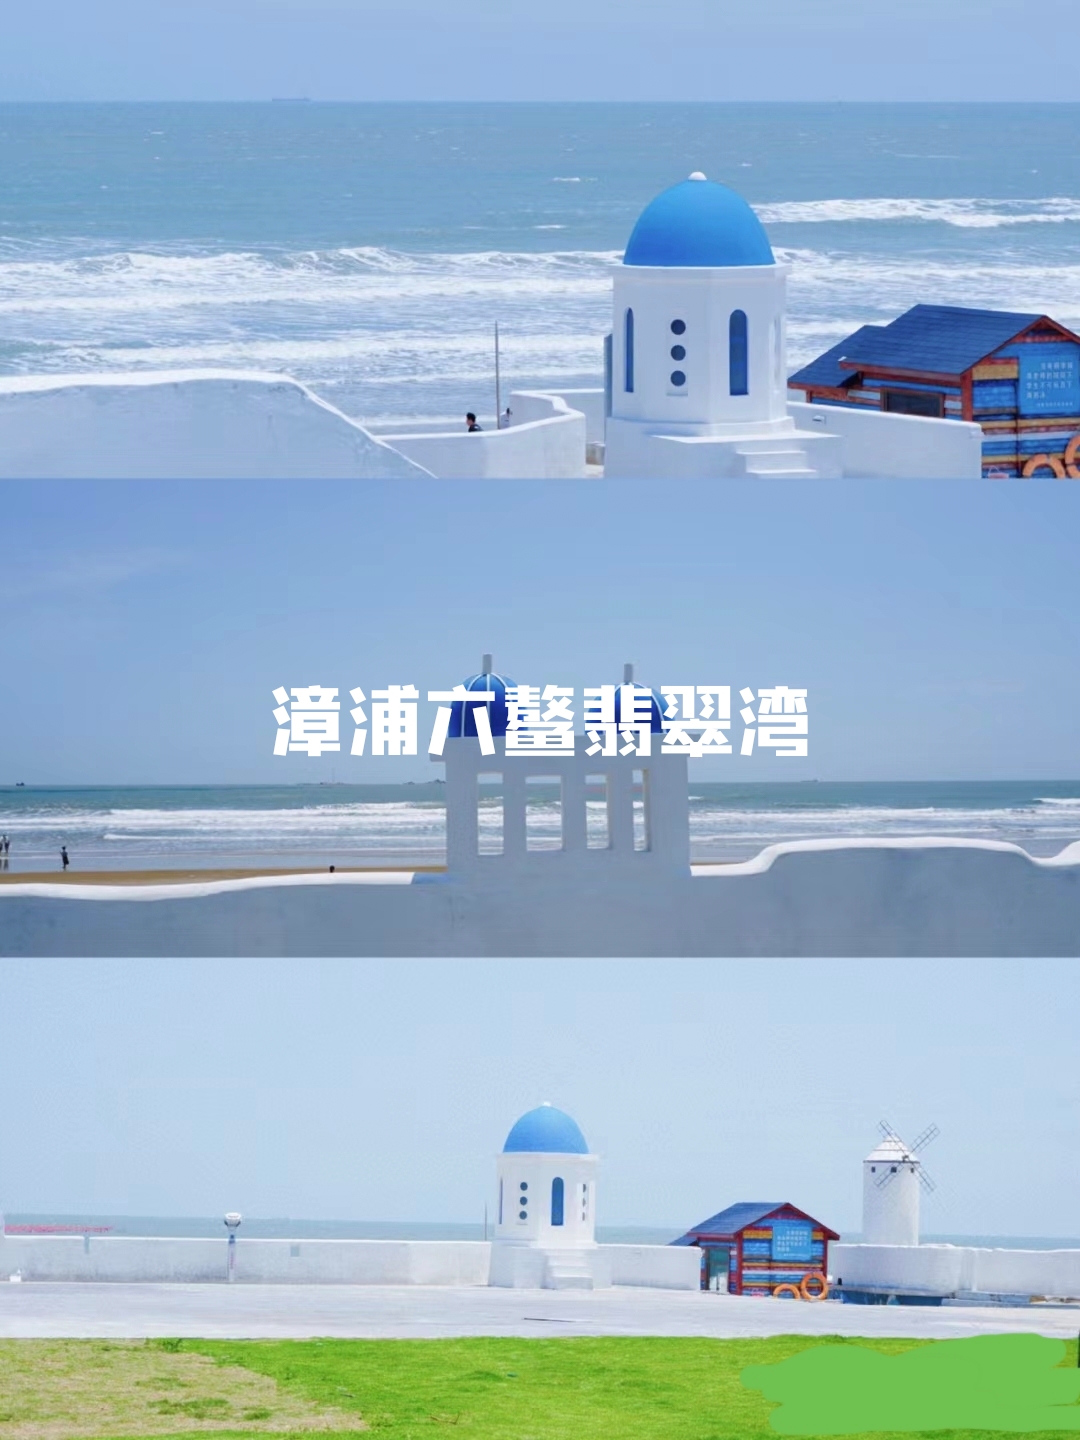 没错！就在漳州，相比厦门人真的很少了。  六鳌翡翠湾——是个度假胜地，重点是景色真的很香！！蓝天碧海